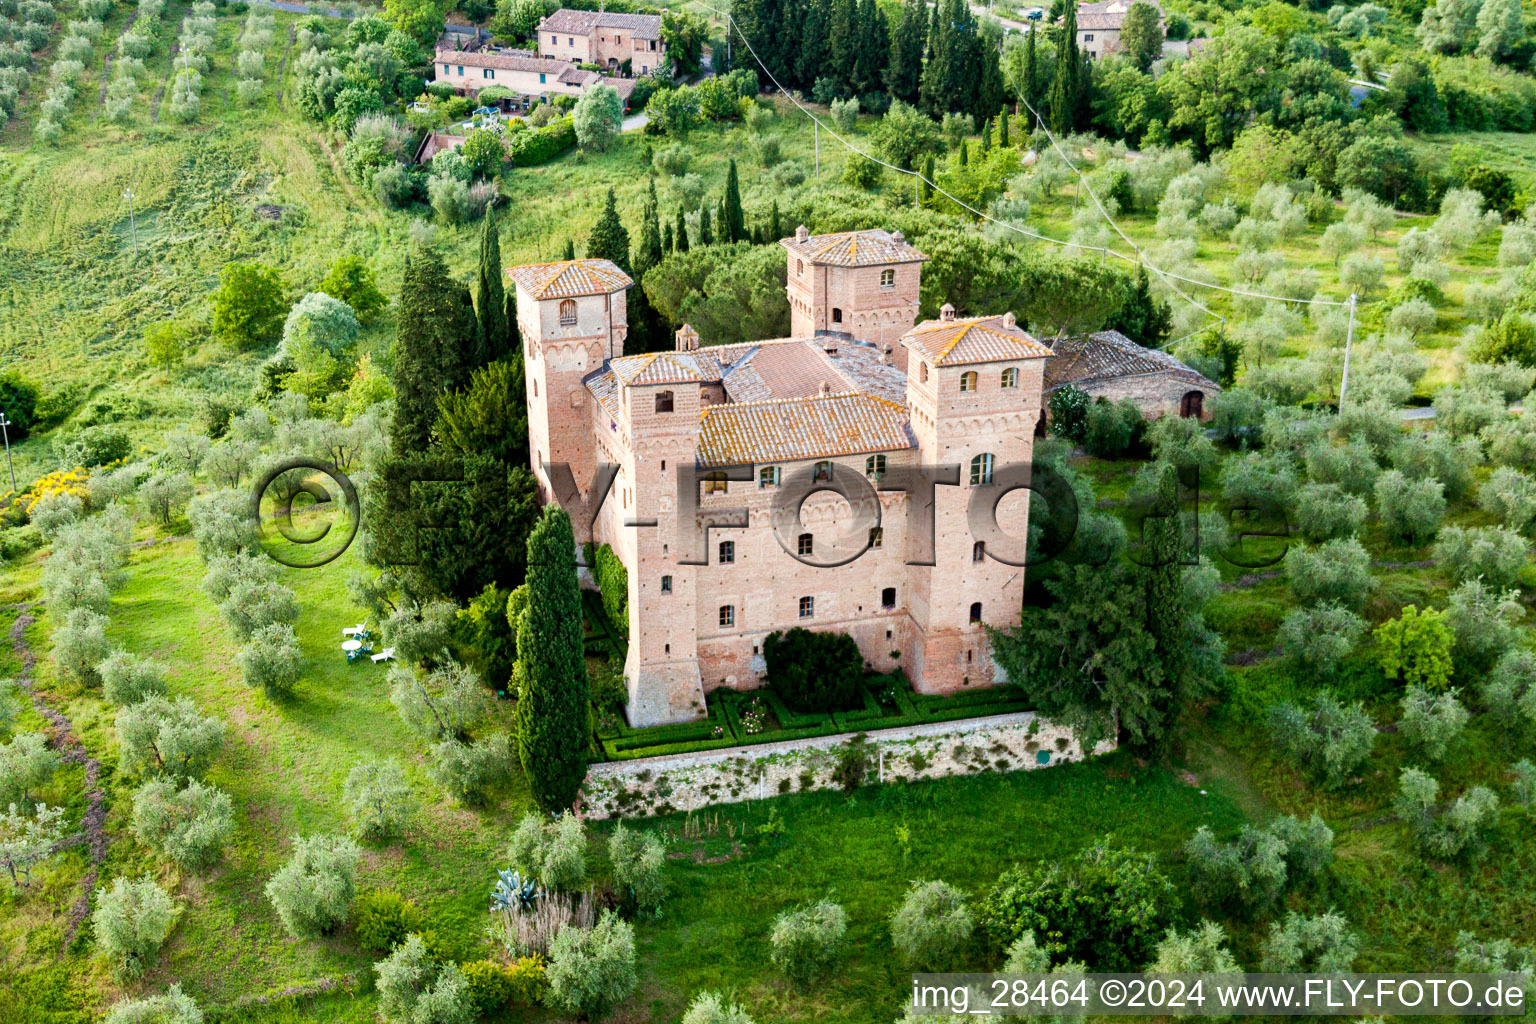 Gebäudekomplex der Schloß-Hotelanlage Castello Delle Quattro Torra in Siena in Toskana im Bundesland Toscana, Italien